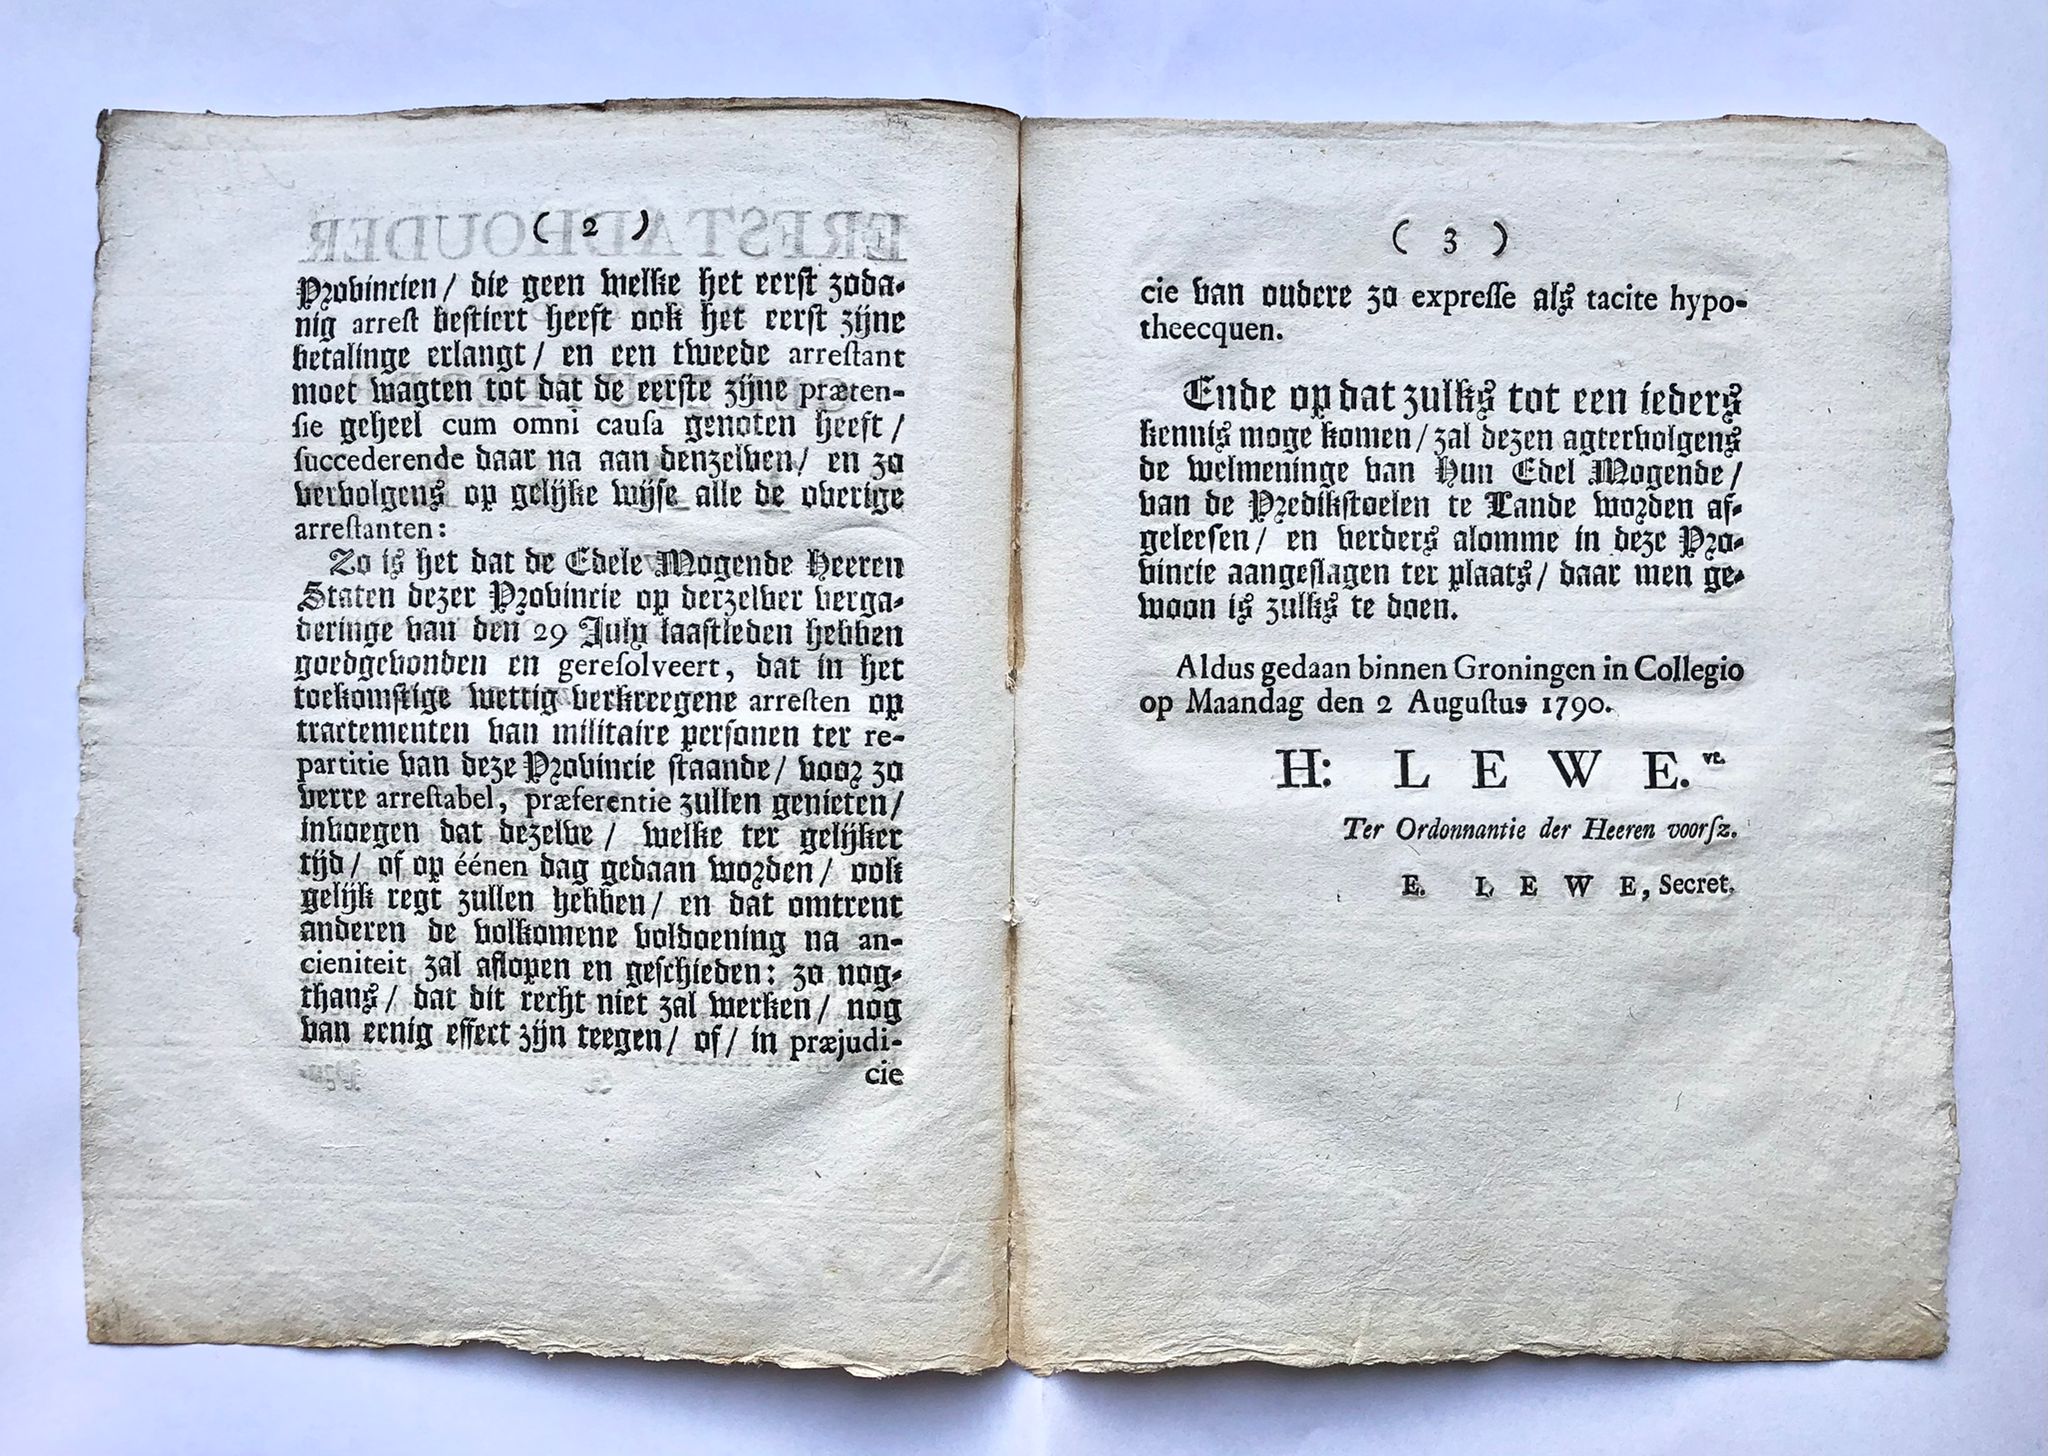 [Groningen, Military, 1790] Erfstadhouder mitsgaders gedeputeerde Staten van Stad Groningen en Ommelanden, doen te weeten, No. 77, 1790, 3 pp.